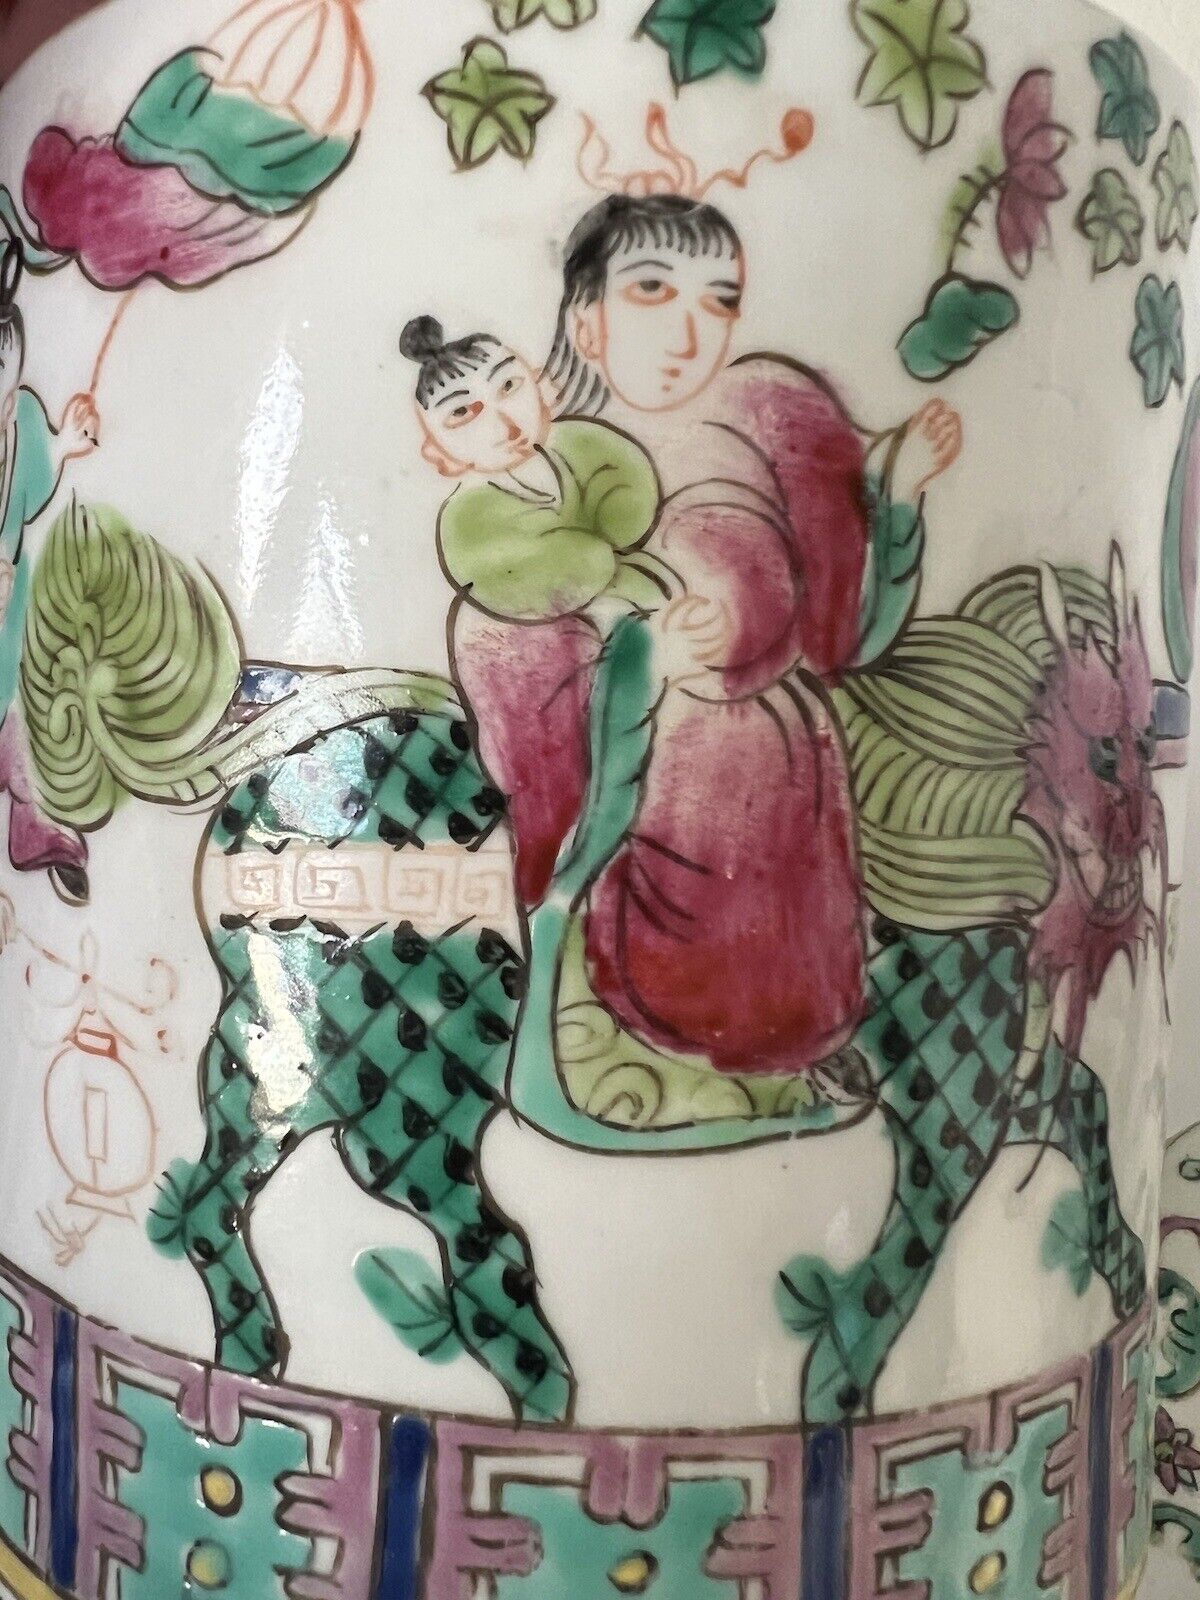 2 Antique Chinese Hand Paint Dragon Children Cylinder Hallmark Famille Jars 6" Без бренда - фотография #11